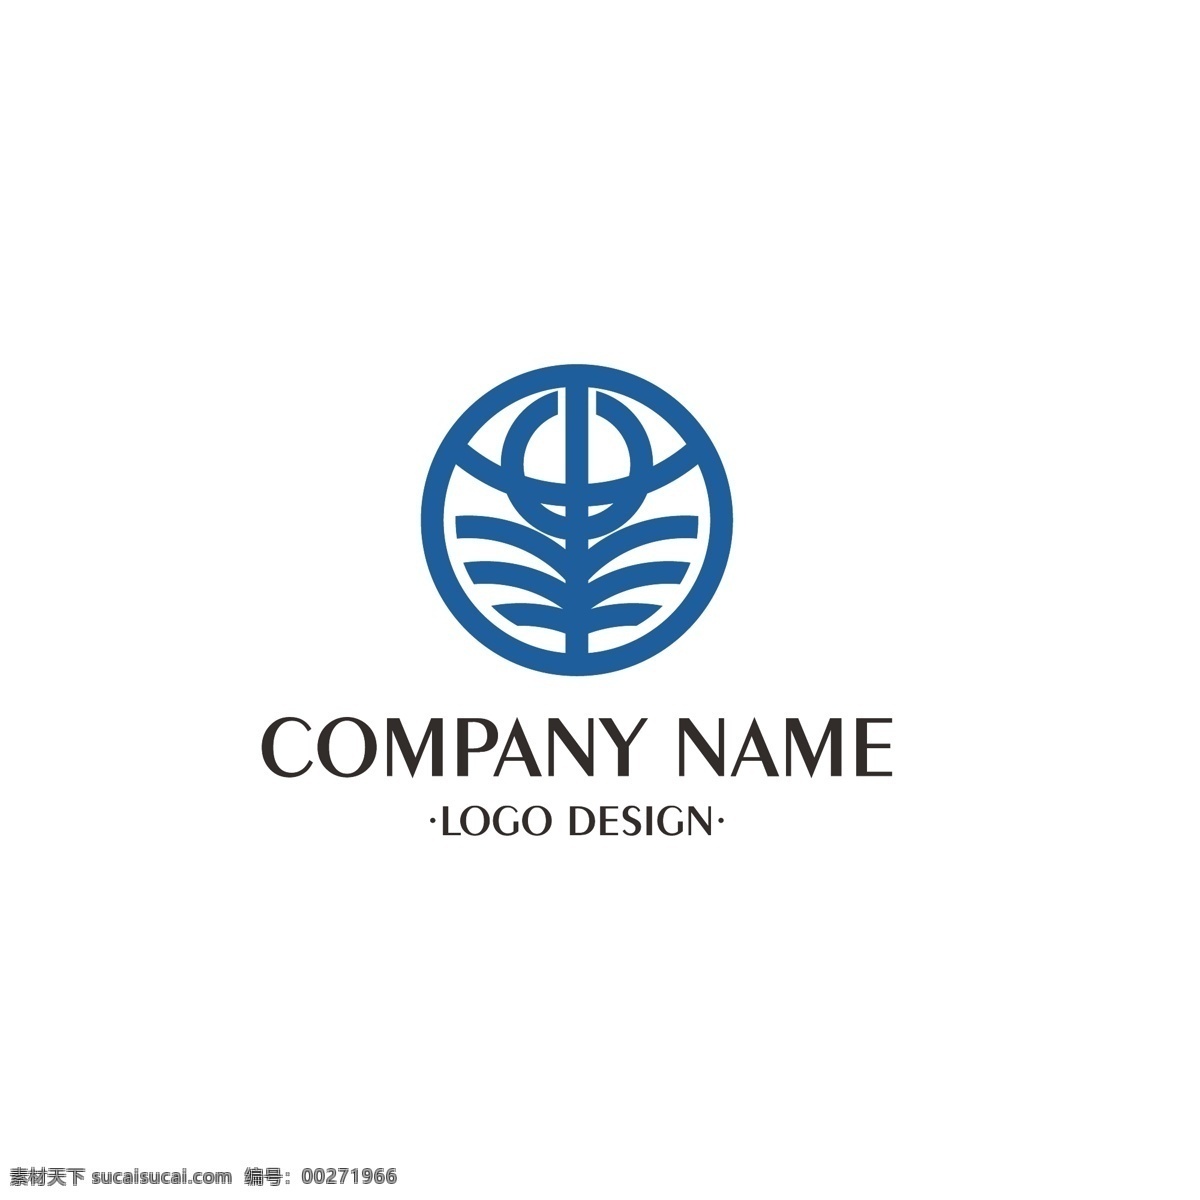 企业 标志 logo 图标 象形 简约 图腾 大气